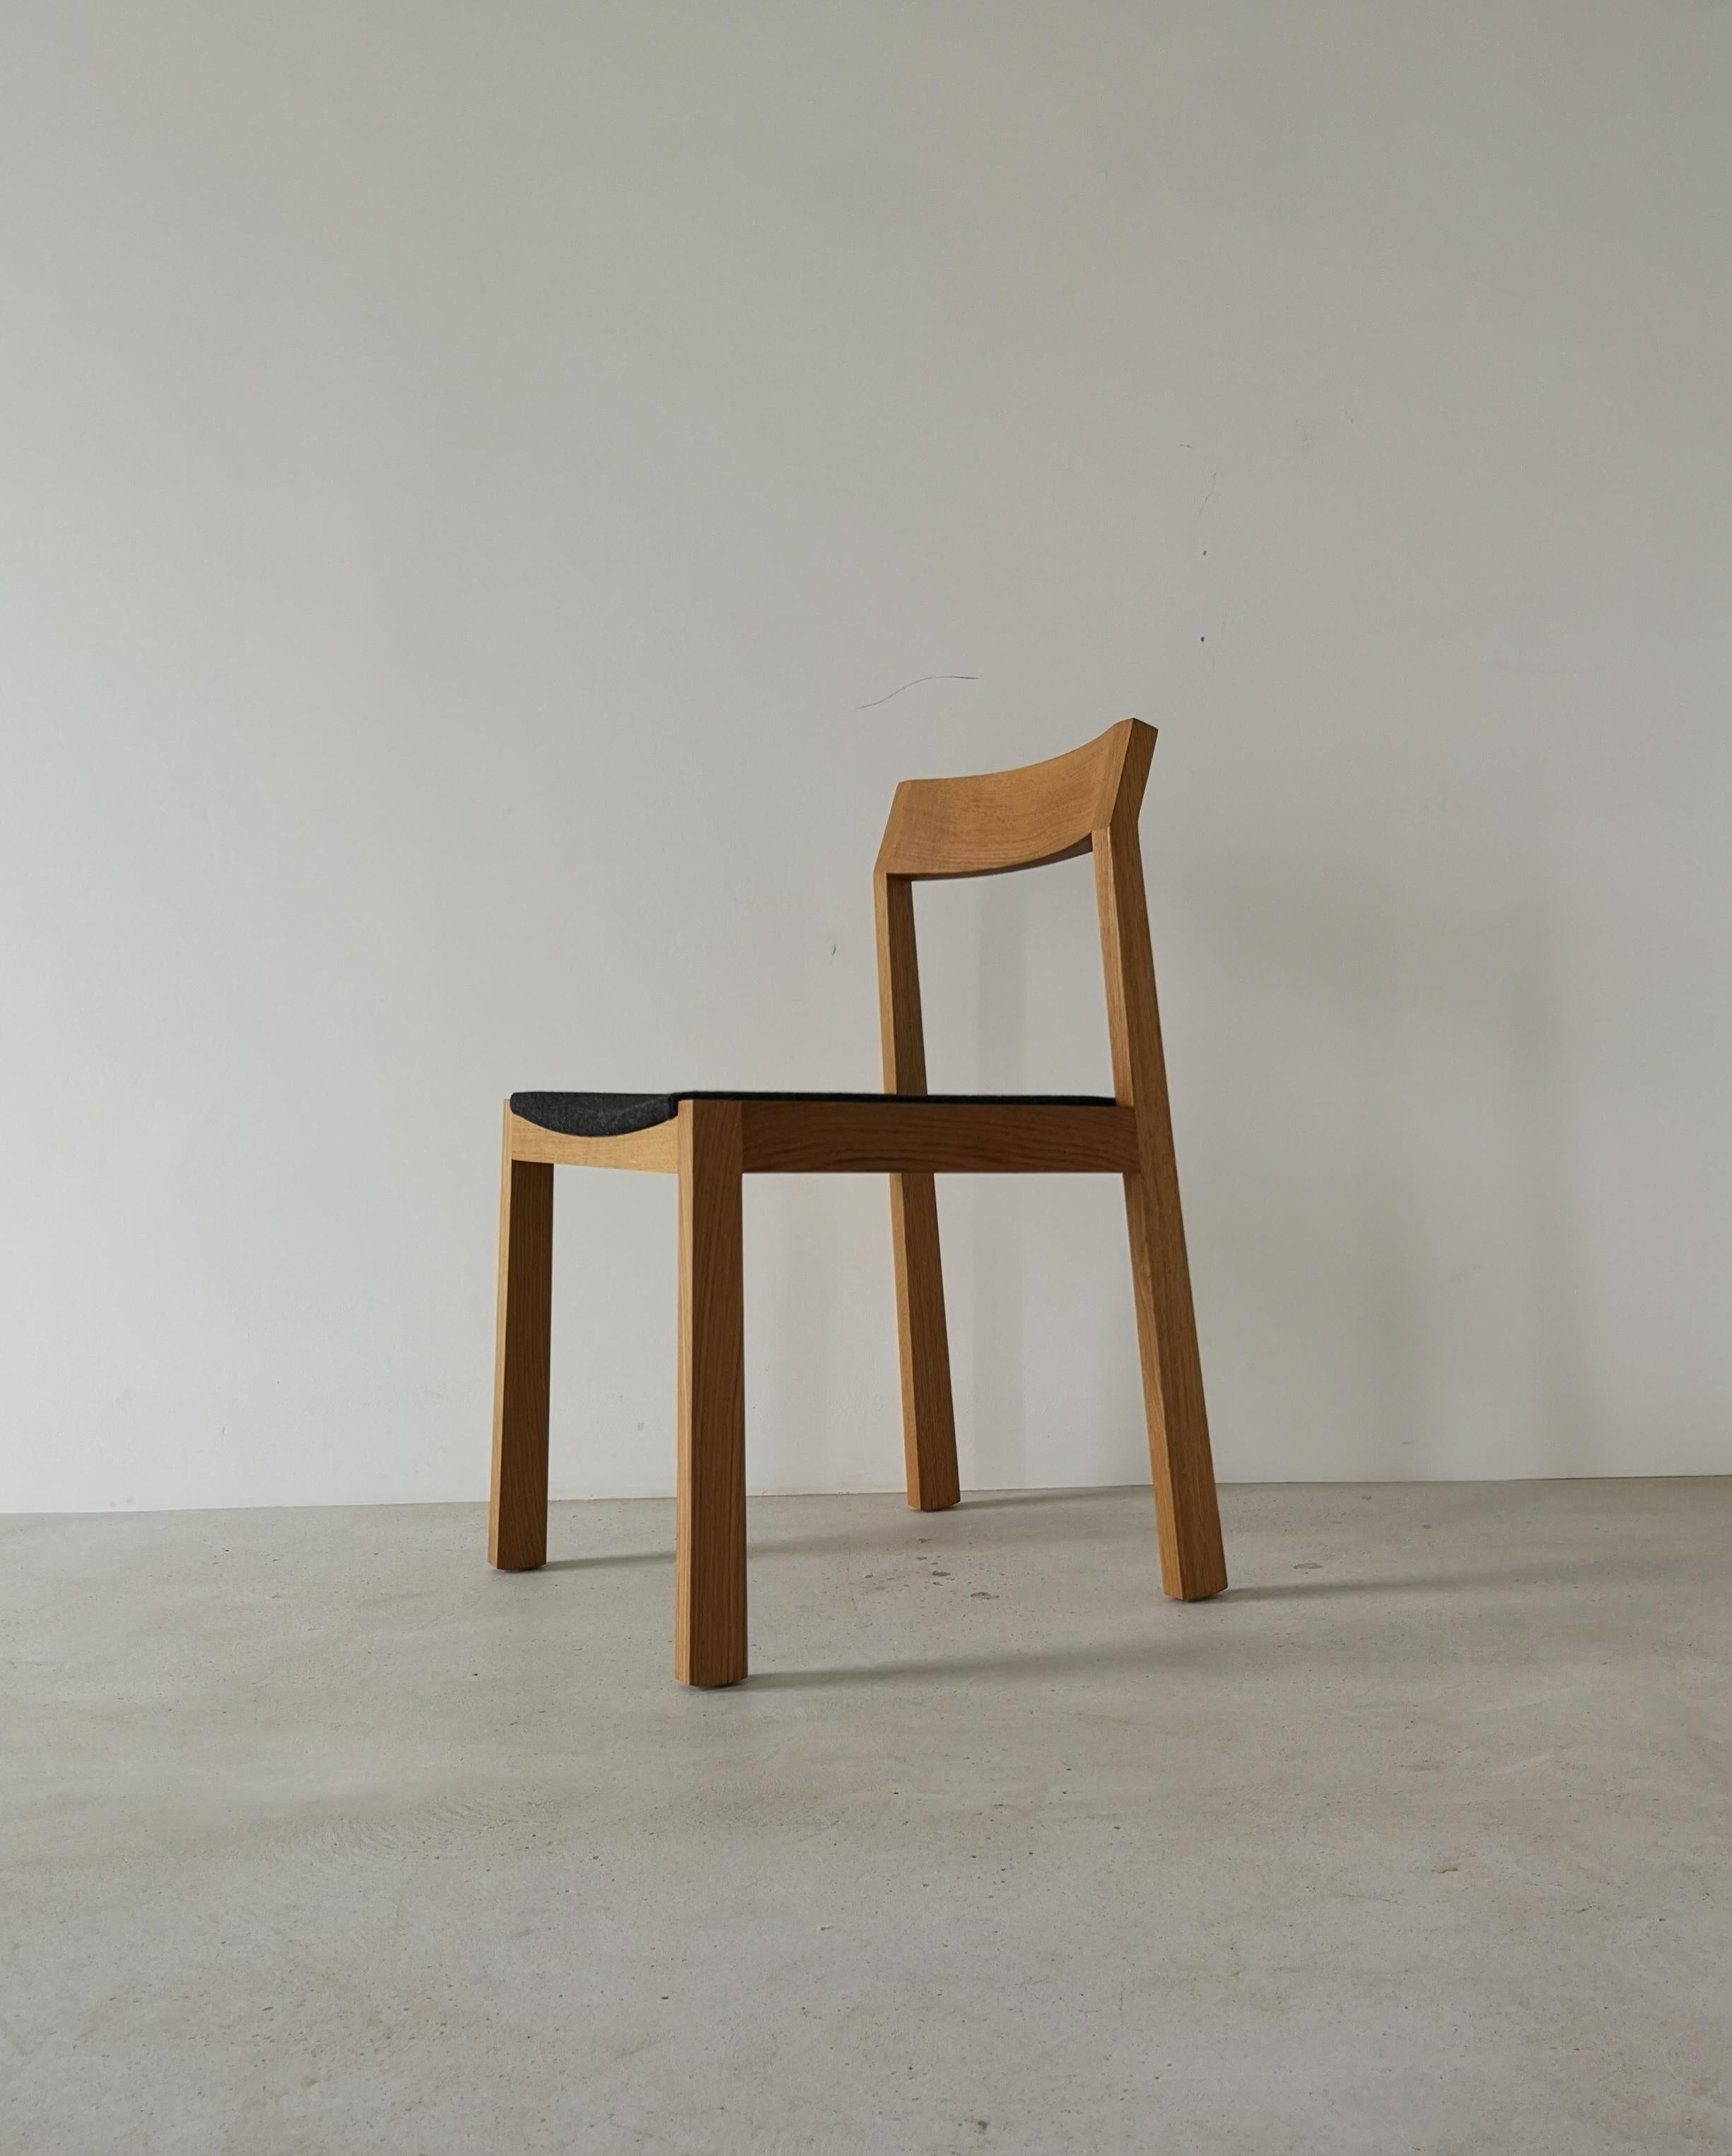 Der A+ Esszimmerstuhl ist aus Massivholz gefertigt und verfügt über einen gebogenen, gepolsterten Sitz für Ihren Komfort sowie eine geformte Rückenlehne zur Unterstützung.
Ein klares, zeitgemäßes Design mit subtilen Details, das sich gut in eine